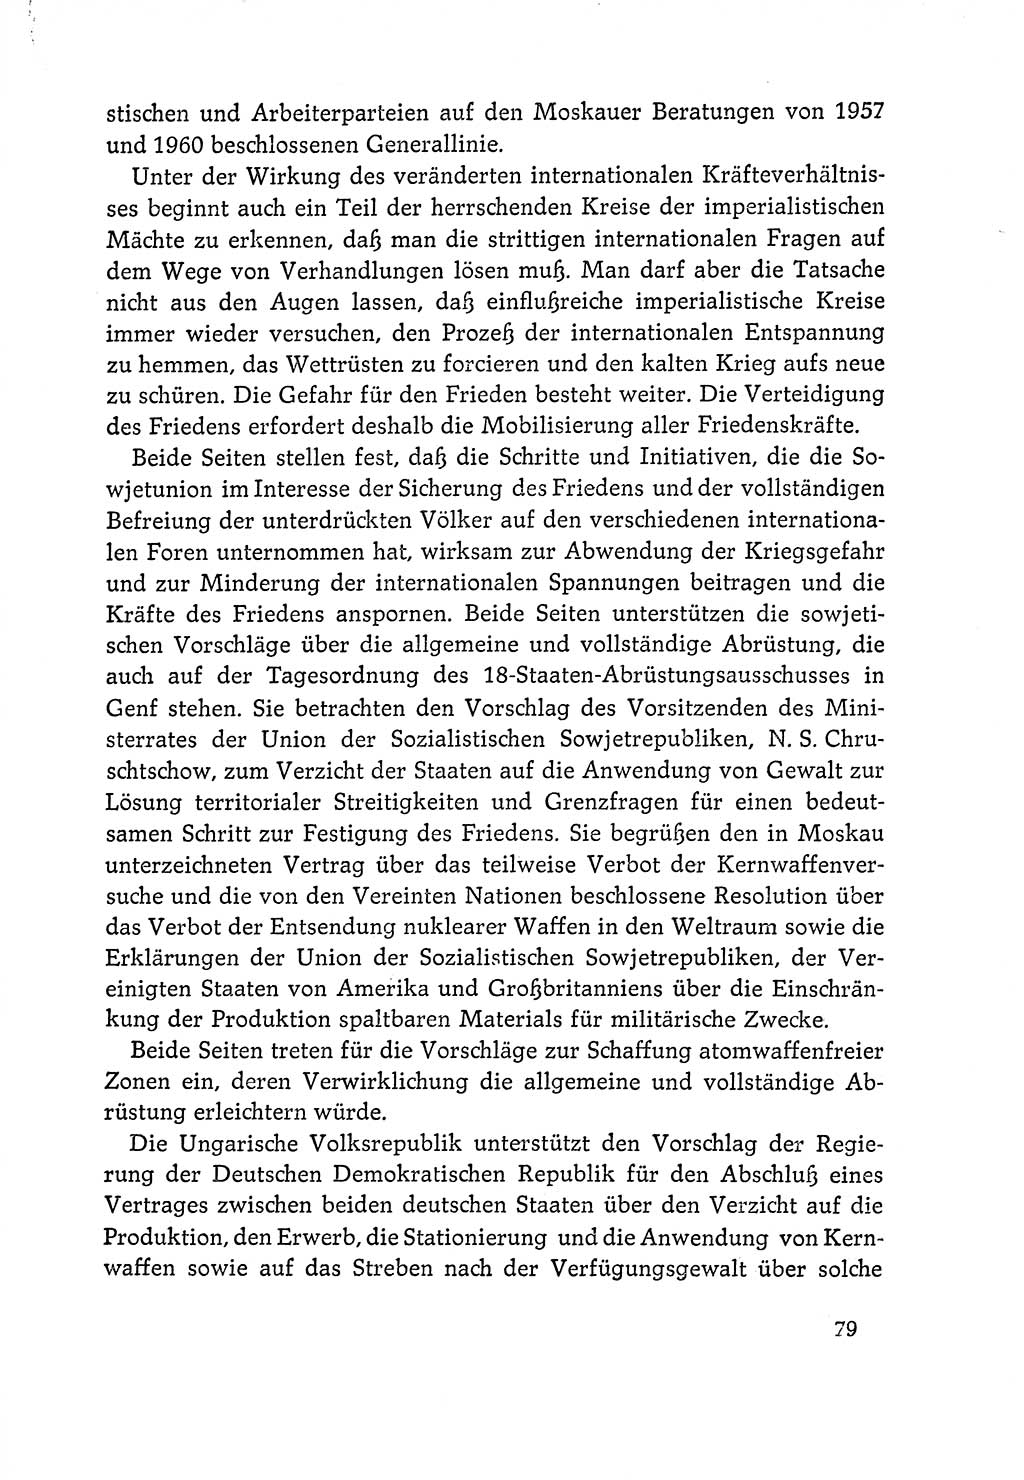 Dokumente der Sozialistischen Einheitspartei Deutschlands (SED) [Deutsche Demokratische Republik (DDR)] 1964-1965, Seite 79 (Dok. SED DDR 1964-1965, S. 79)